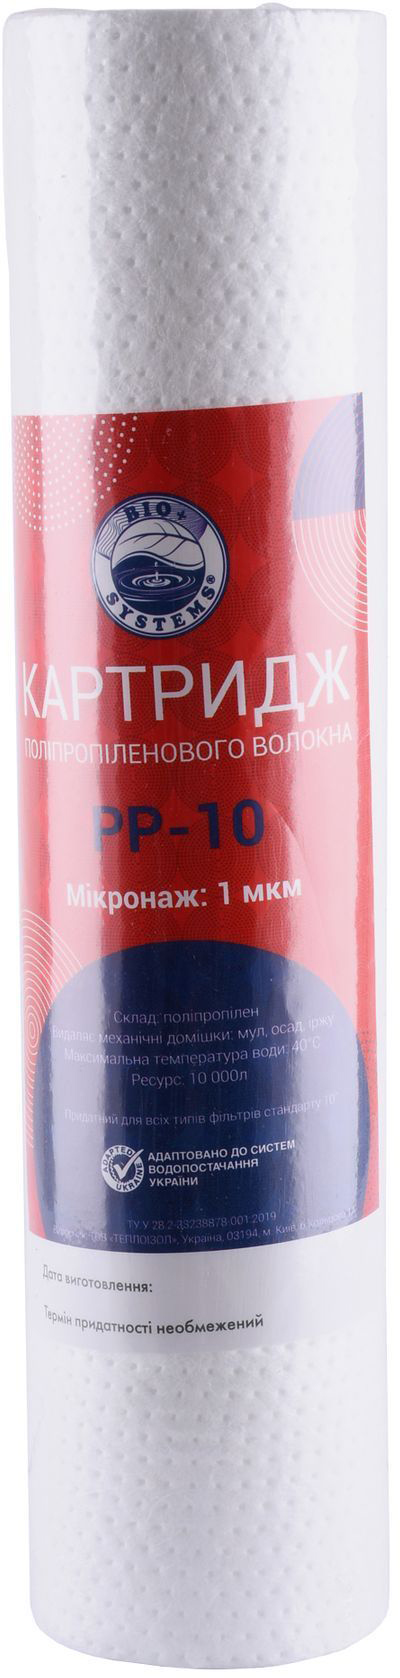 Купить картридж для фильтра  BIO Systems PP-10 (1 мкм) в Киеве